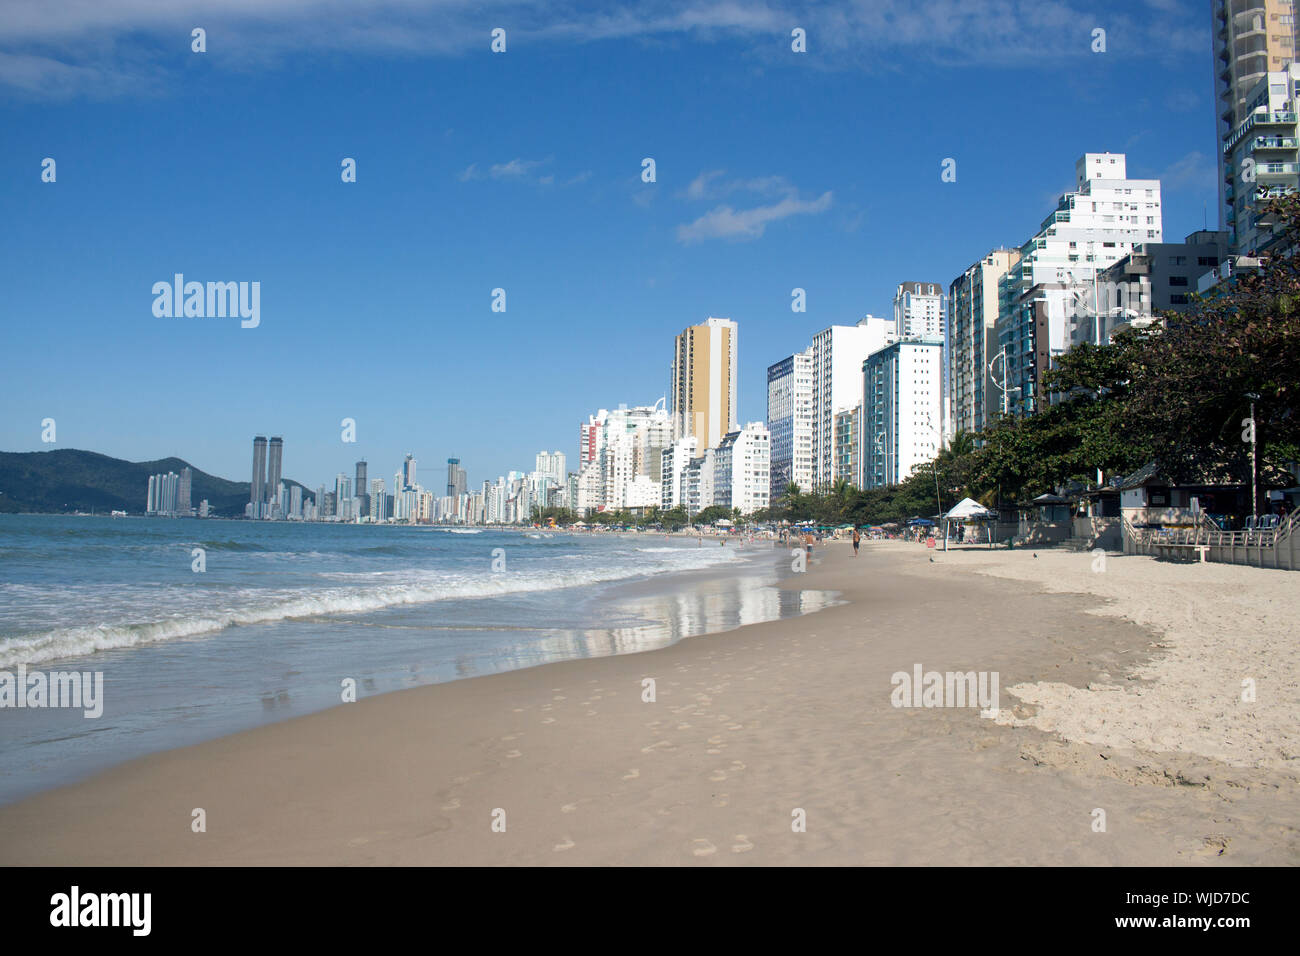 Balneario Camburiú présente la deuxième plus grande au Brésil, de verticalisation avec 57 p. 100 des ménages étant vertical. S. Catarina - Brésil Banque D'Images